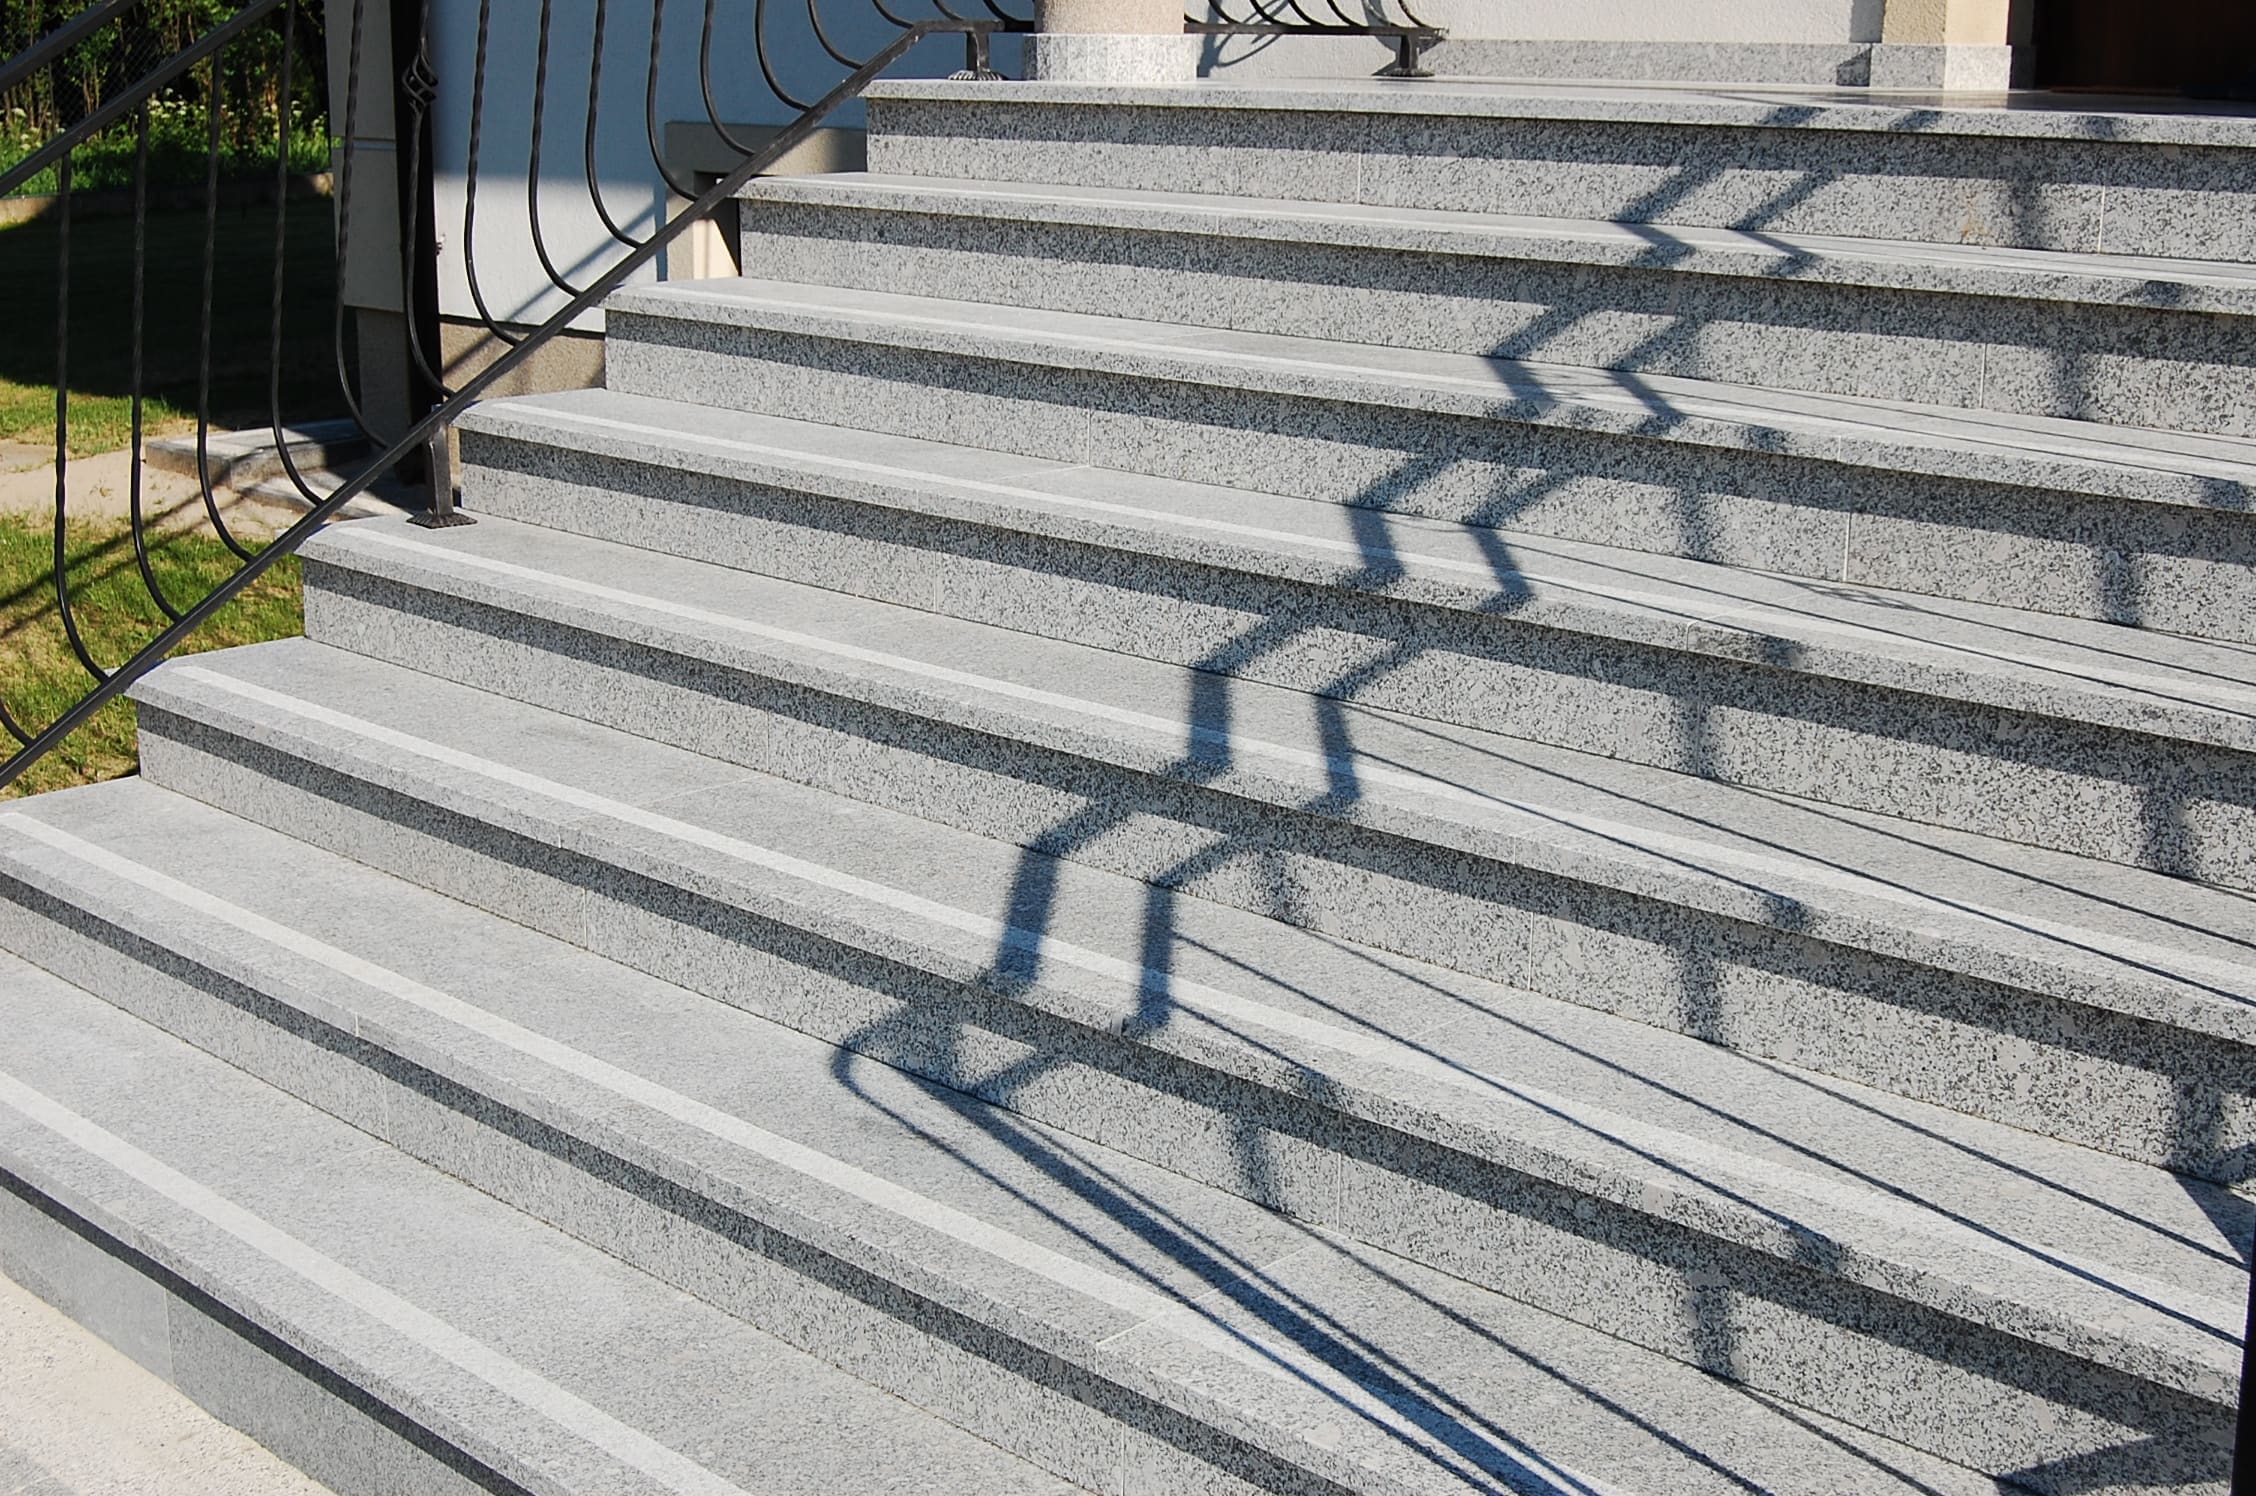 Jaki kamień wybrać na schody wewnętrzne i zewnętrzne? – Blog – Fainner